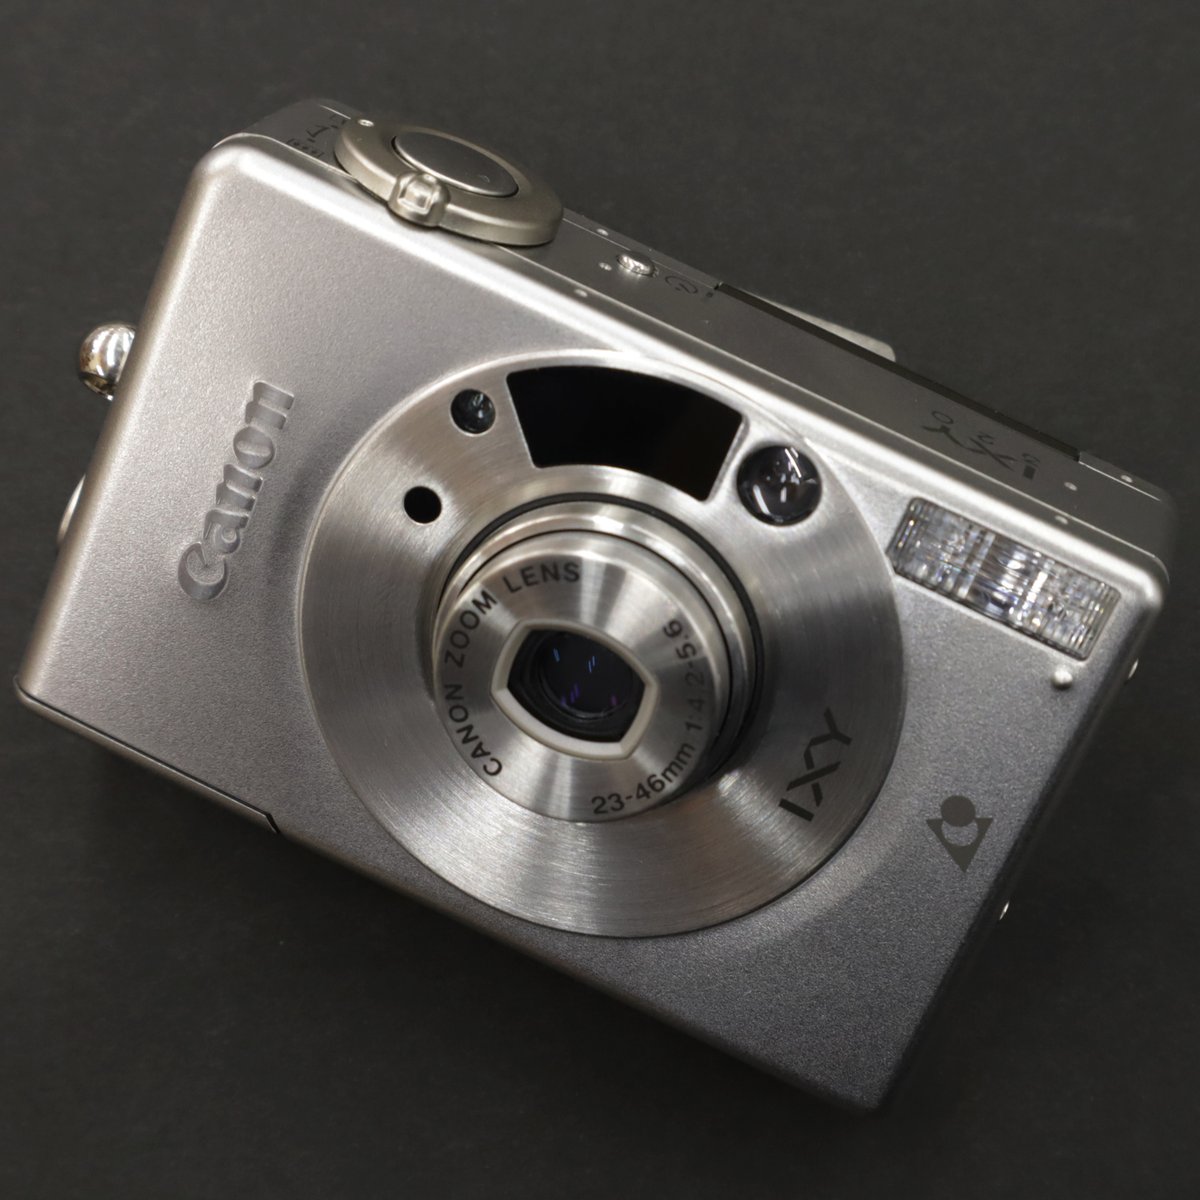 チャンプカメラ Canon Ixy 3 1 500 By 青葉台 店 手のひらサイズのコンパクトな Apsカメラ 小さなボディに程よいずっしり感と高級感のある金属外装がオシャレな一台です 当店にて期限切れ Apsフィルム の販売や即日スピード現像 データ化